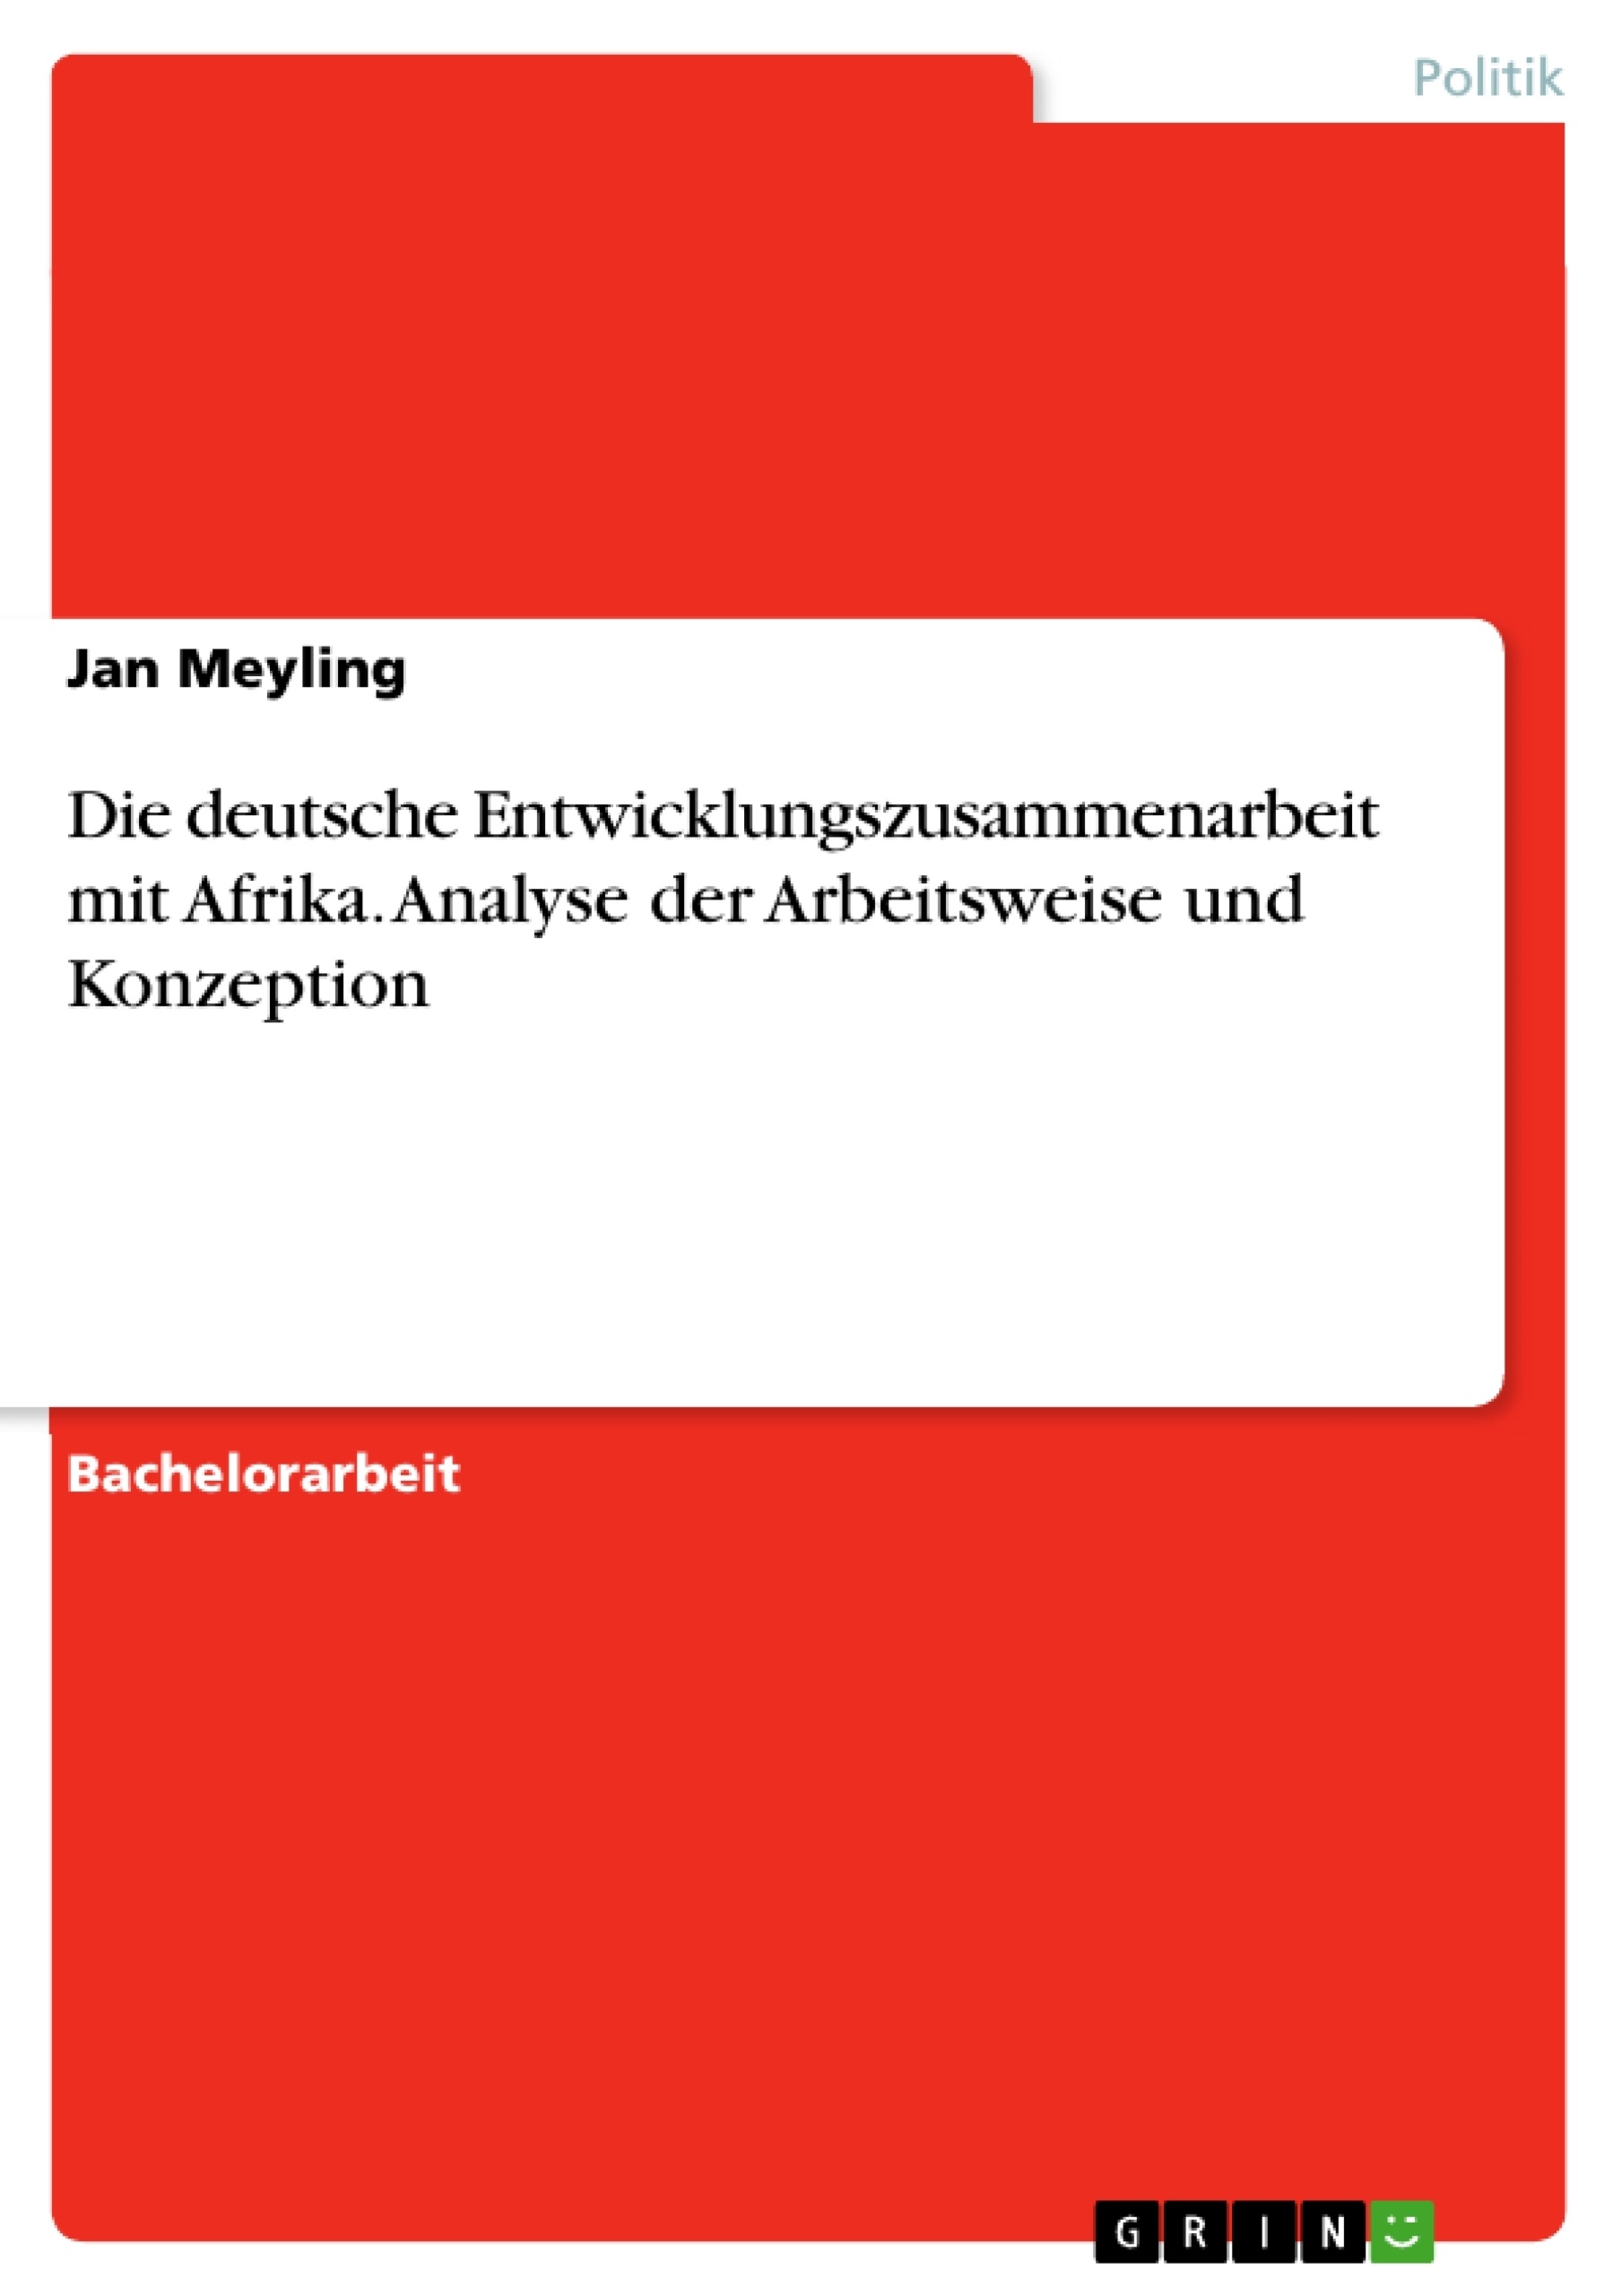 Título: Die deutsche Entwicklungszusammenarbeit mit Afrika. Analyse der Arbeitsweise und Konzeption